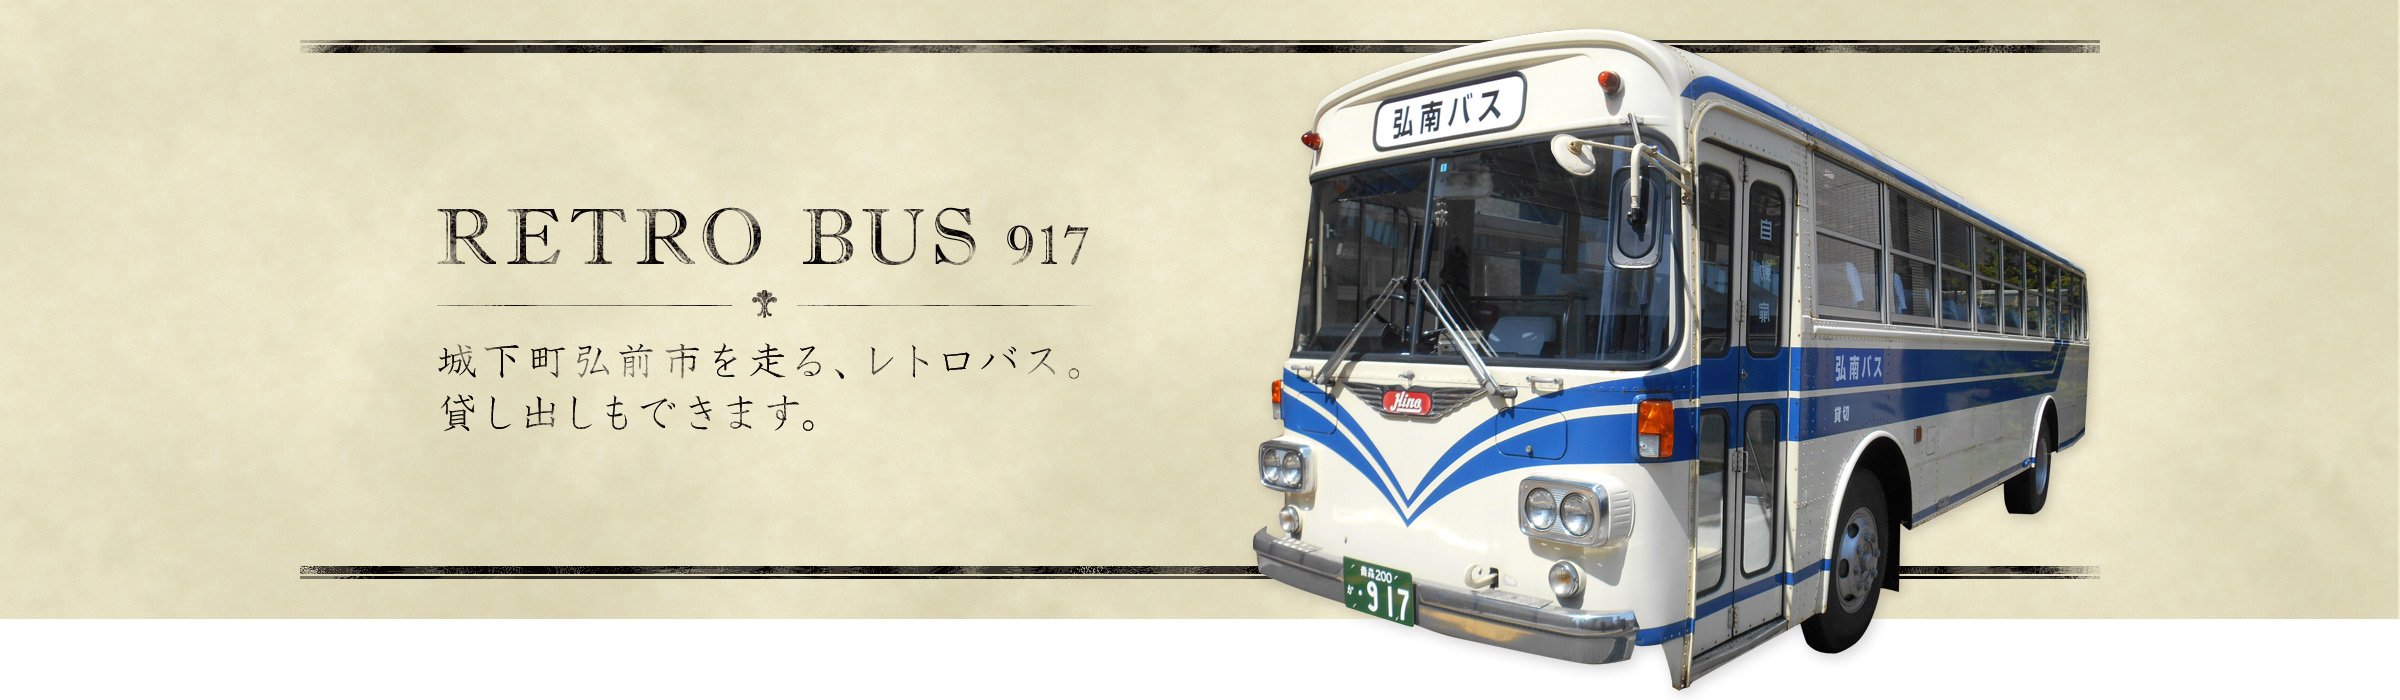 弘南バス レトロバス